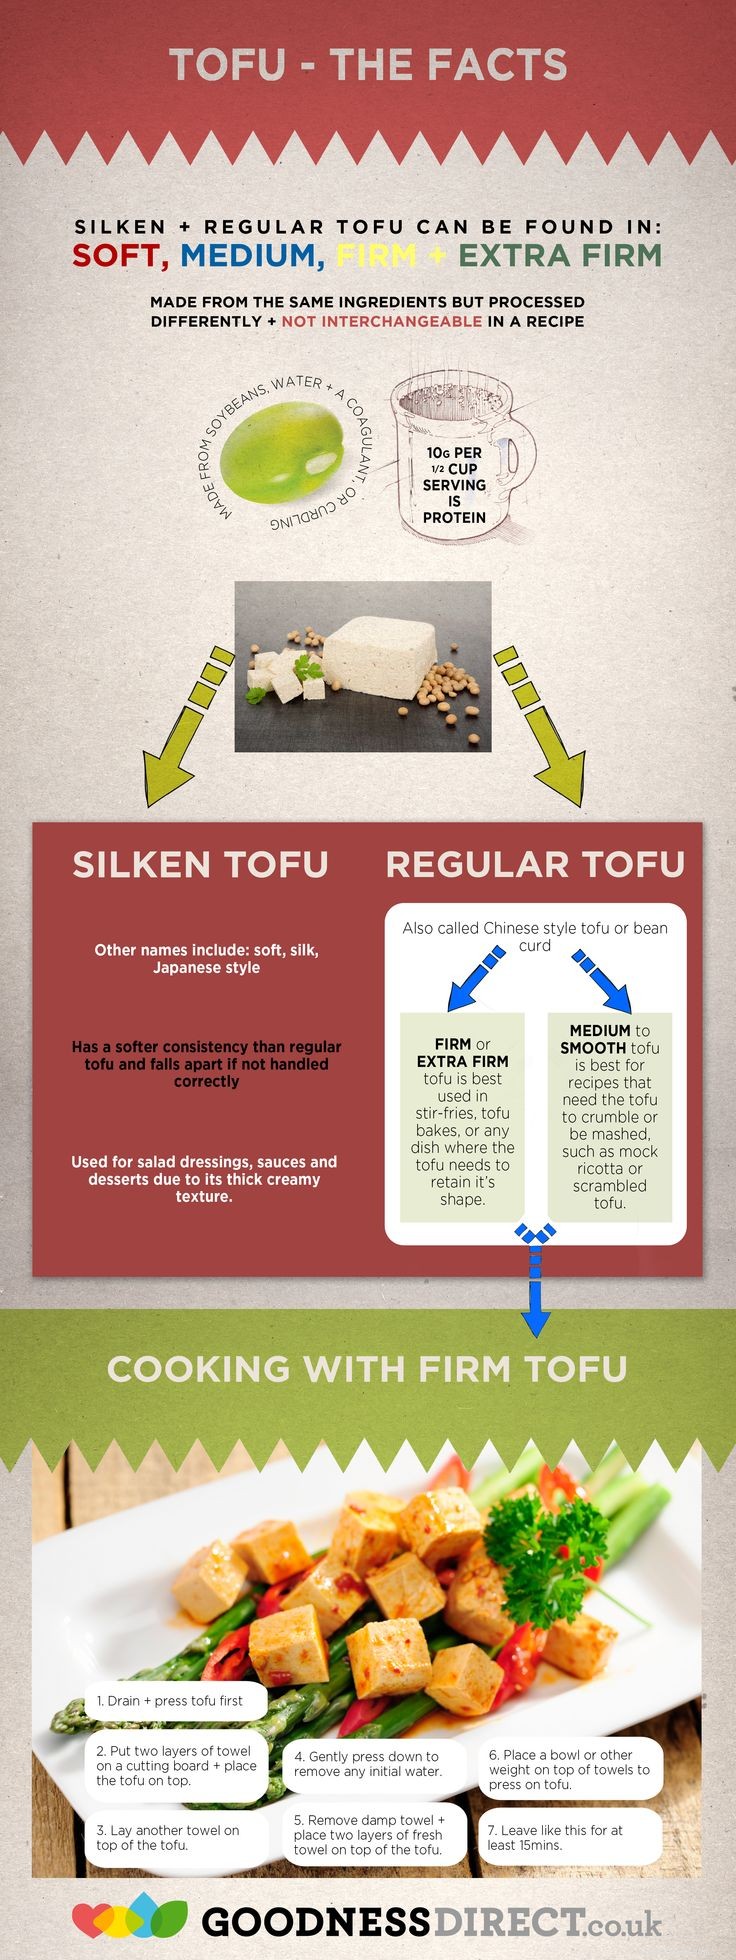 Kunnen honden tofu eten? 3 mogelijke voordelen en 6 bijwerkingen